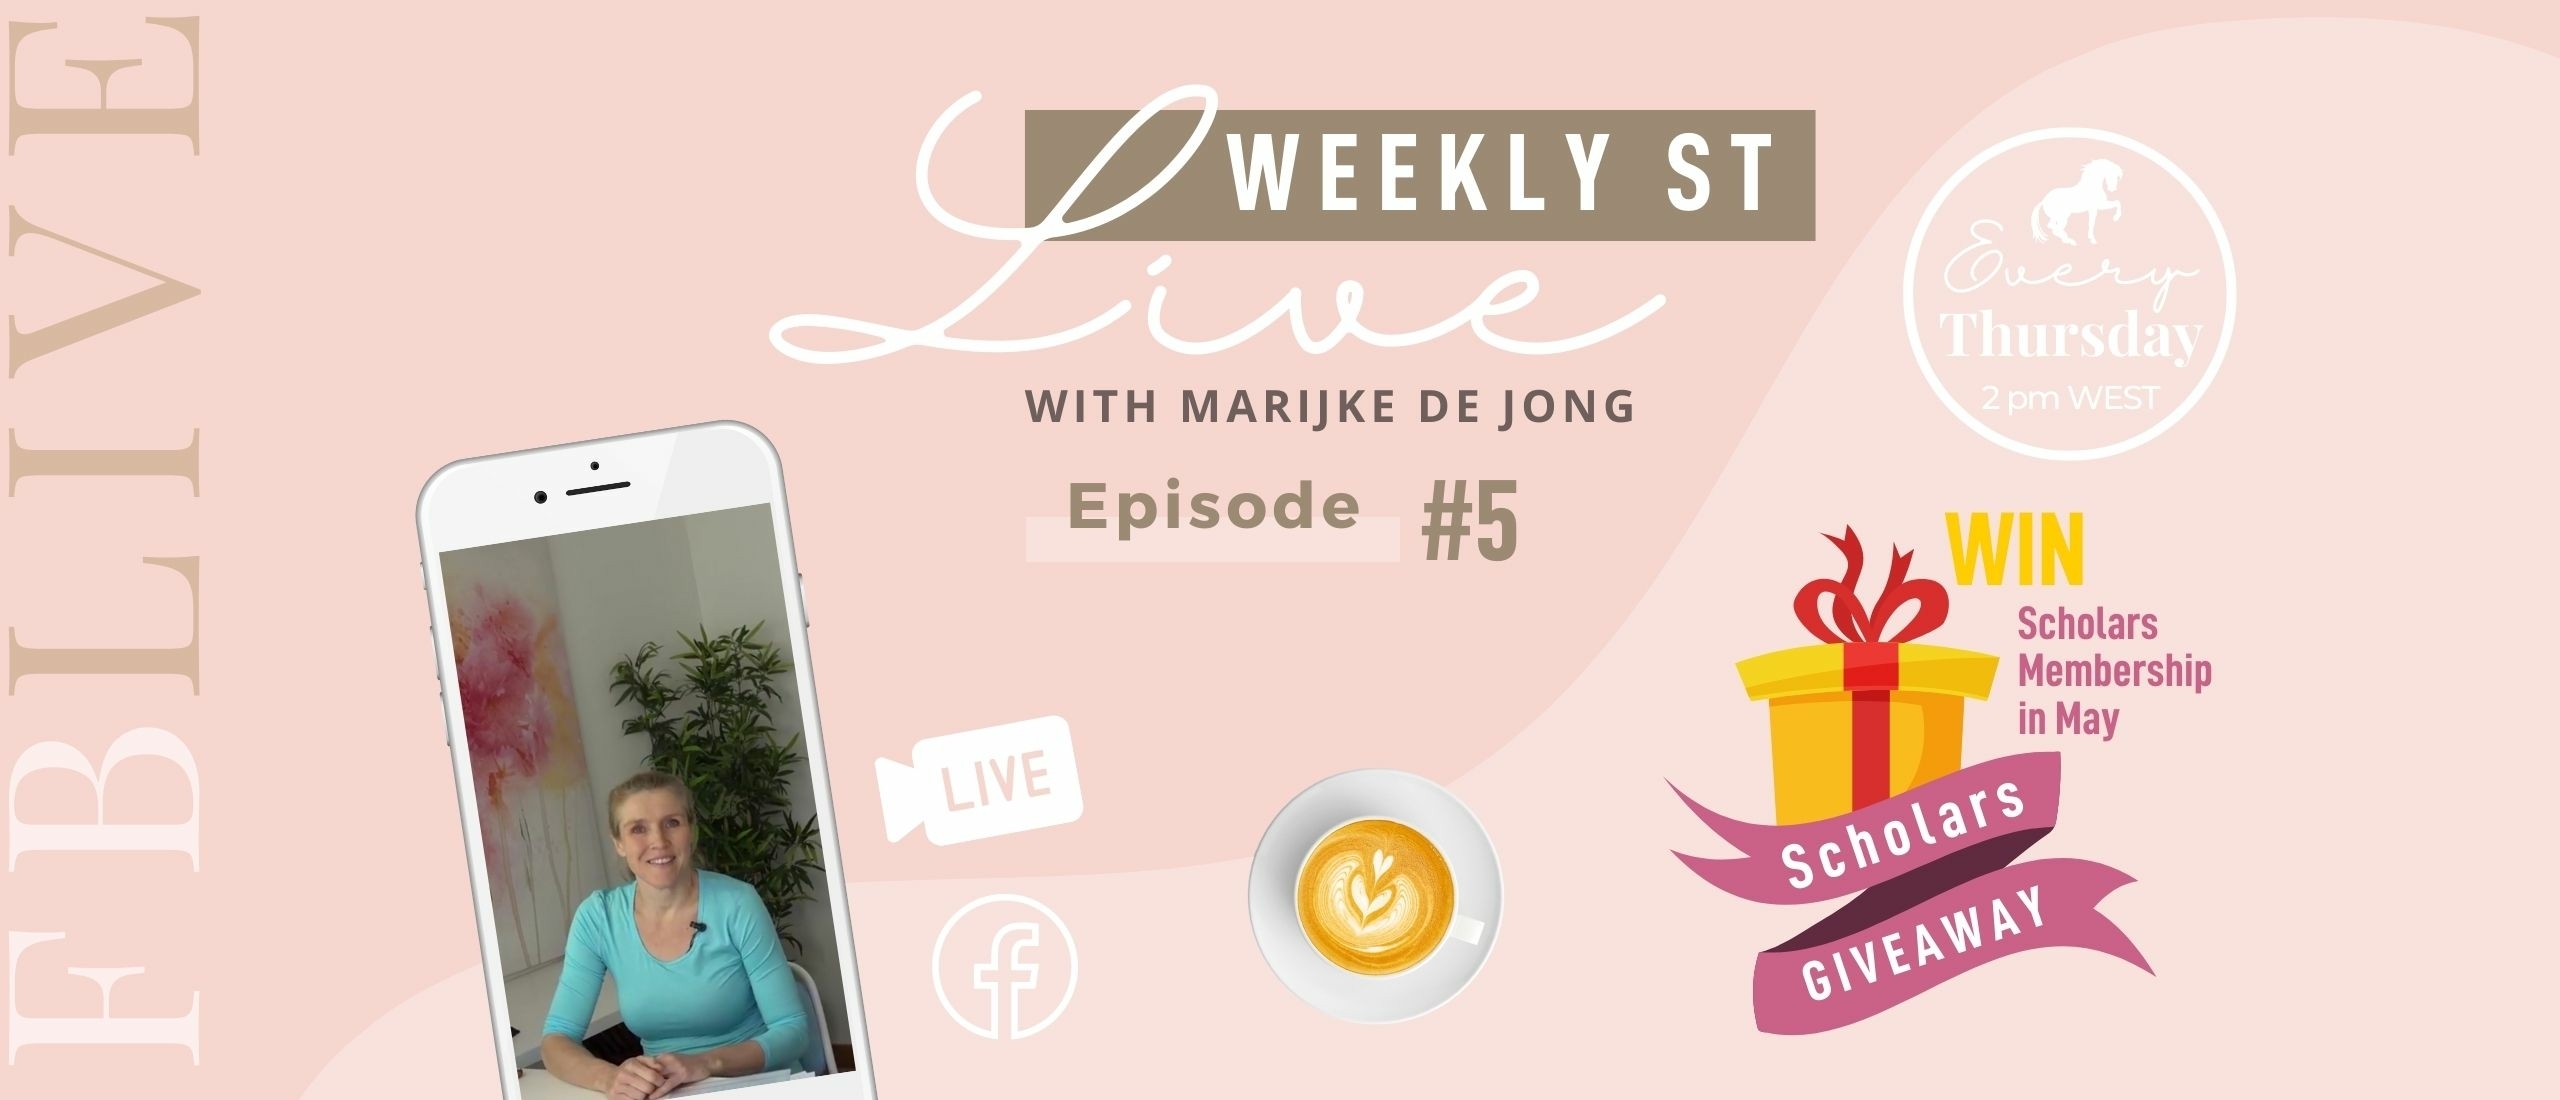 Weekly ST #5 | Marijke de Jong Live